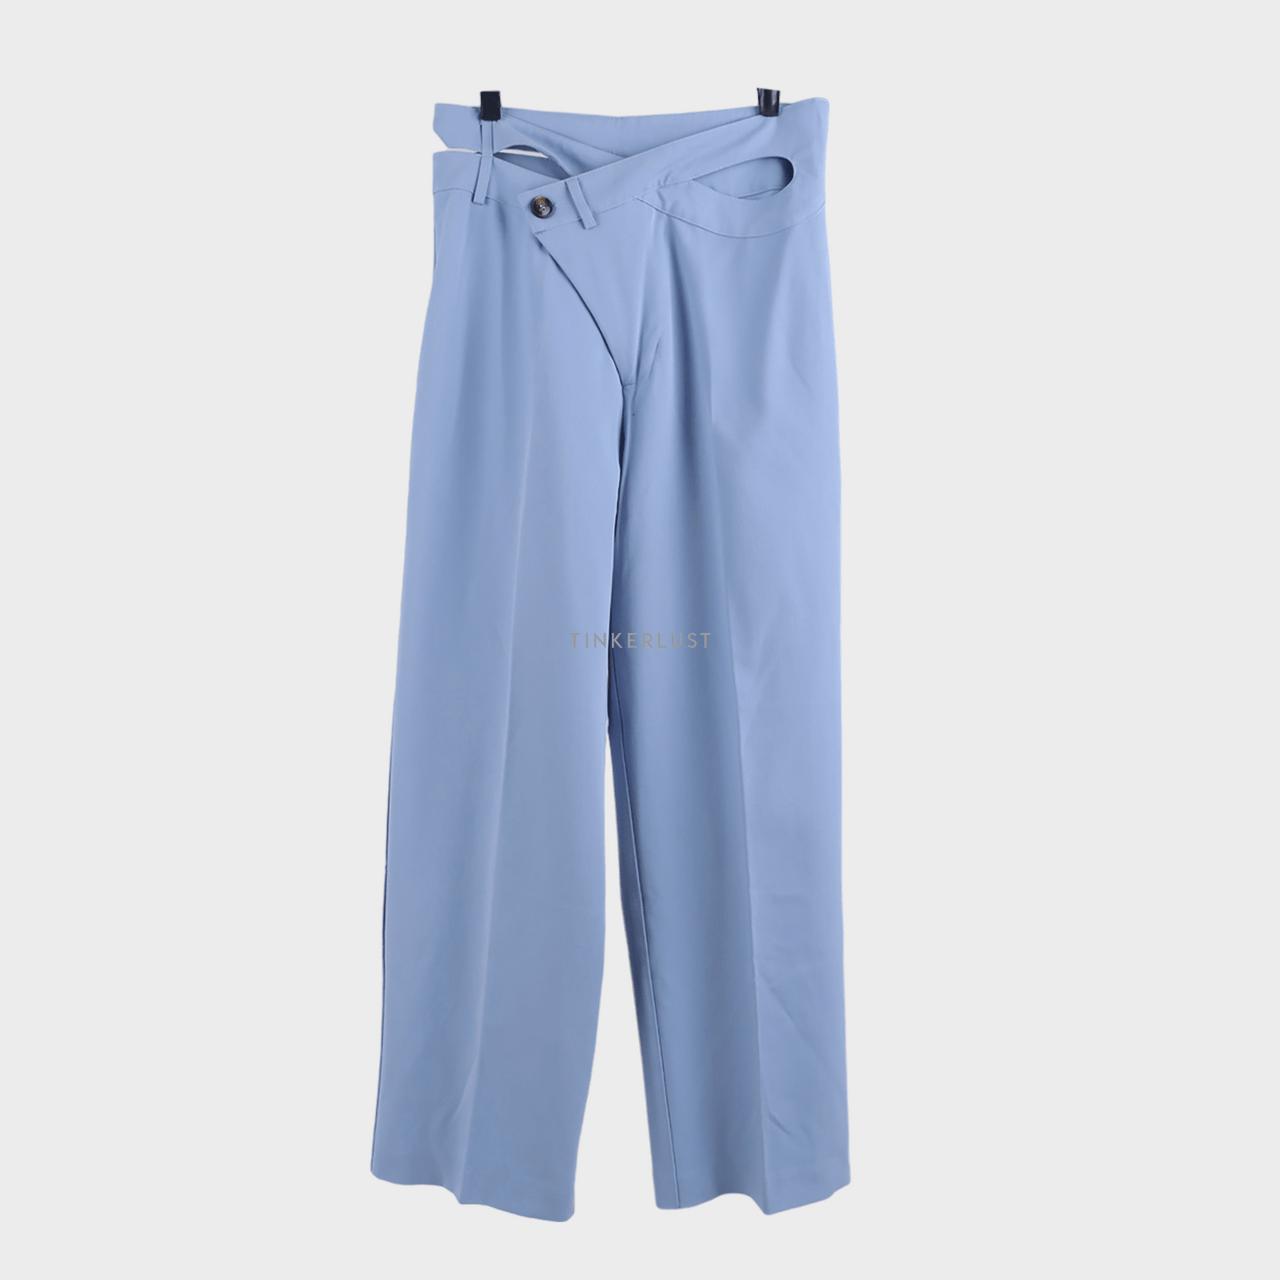 3Mongkis Blue Long Pants